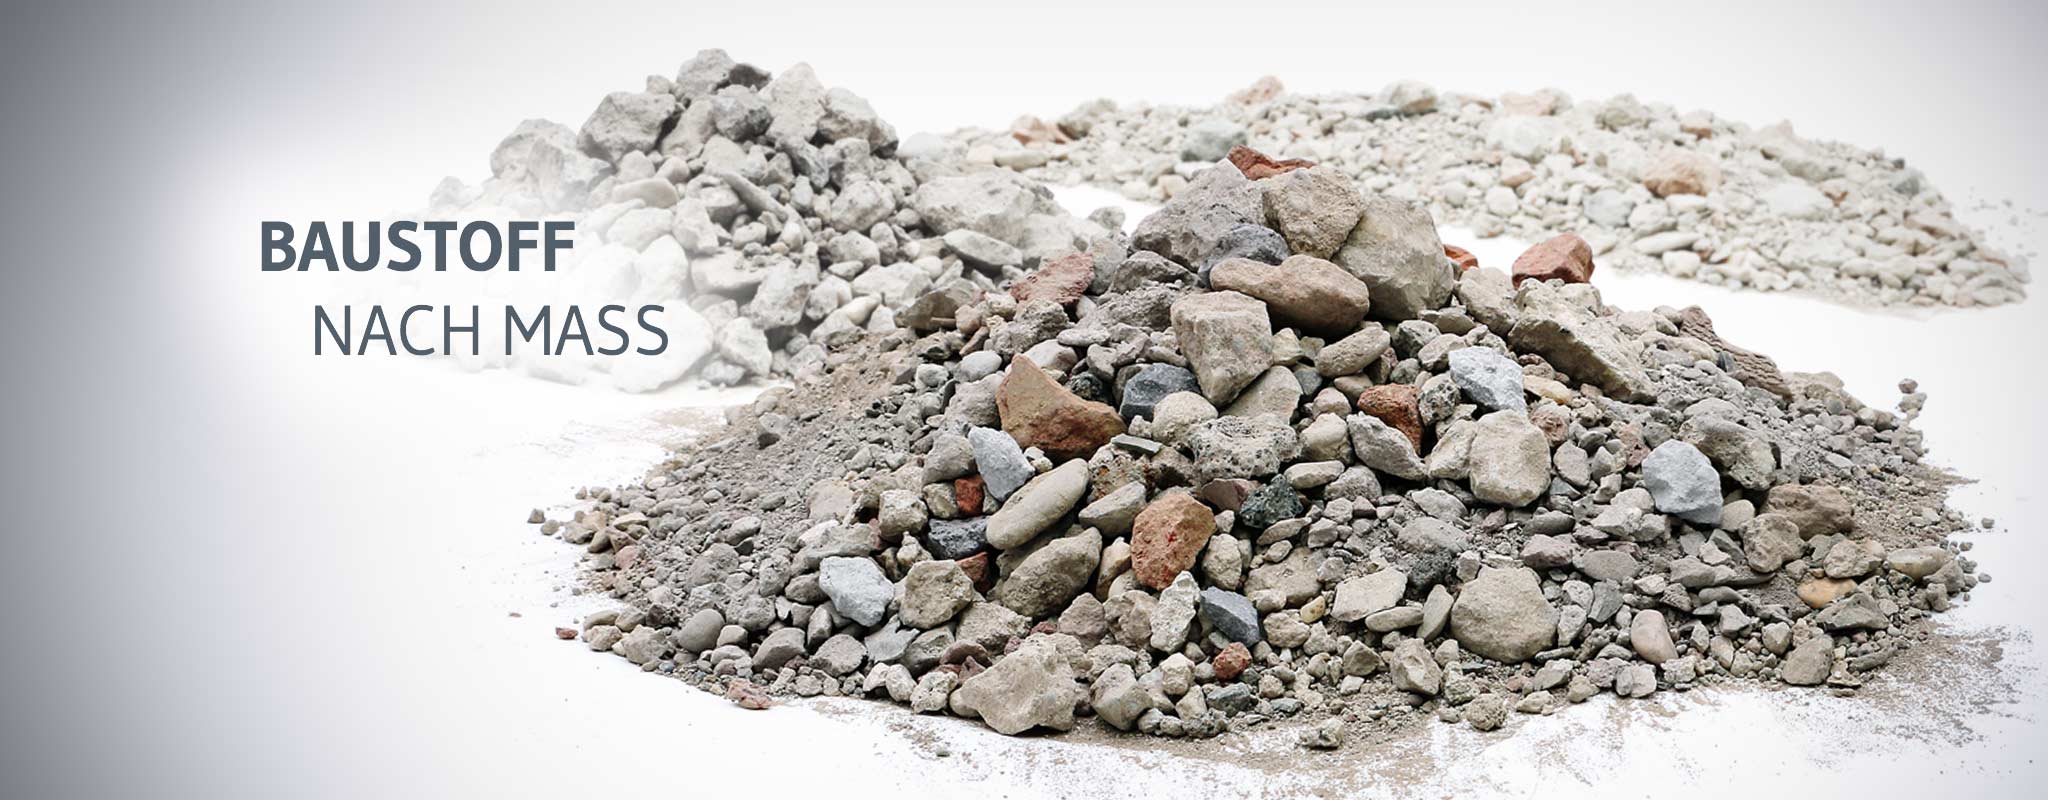 remexit® ist ein Recyclingbaustoff nach Maß in unterschiedlichen Gesteinskörnungen